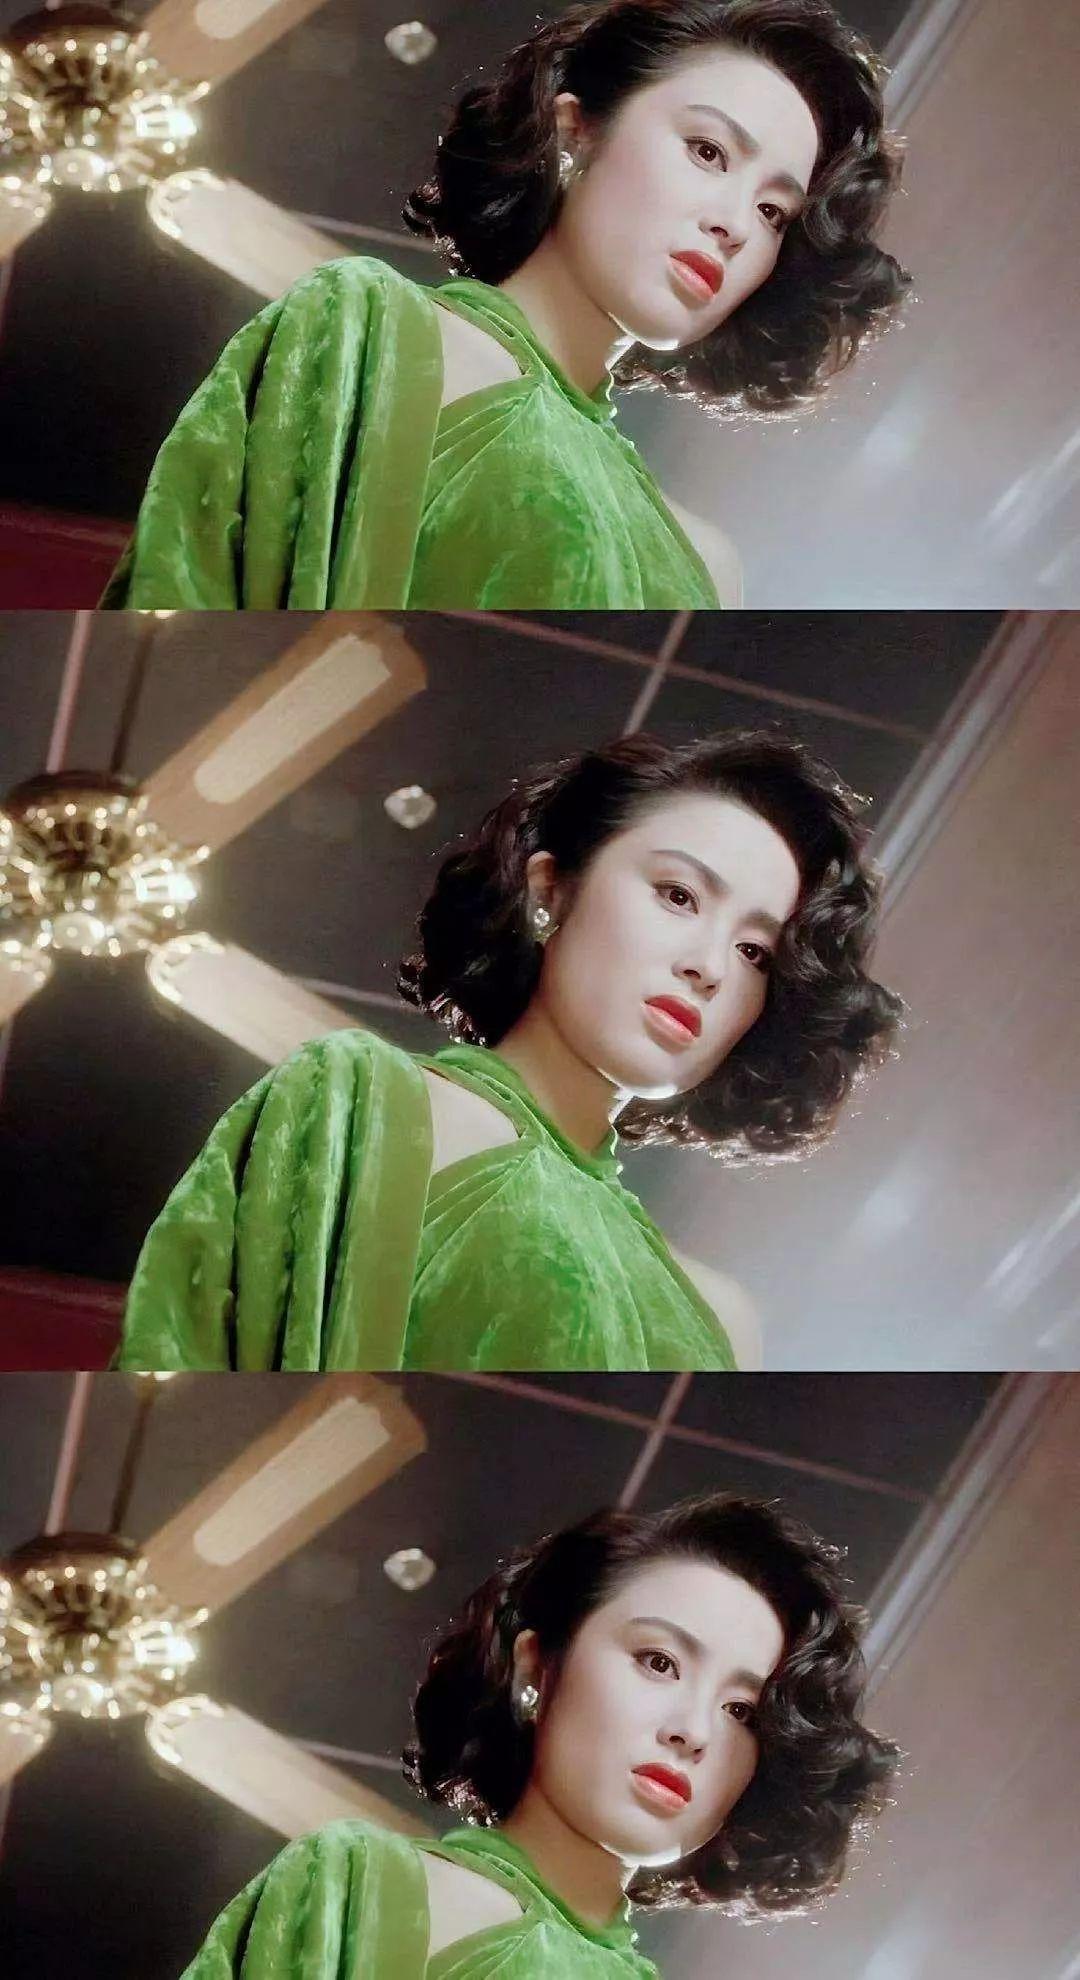 张敏:演艺事业如日中天 张敏,中国香港女演员,1986年踏入影视圈,演技